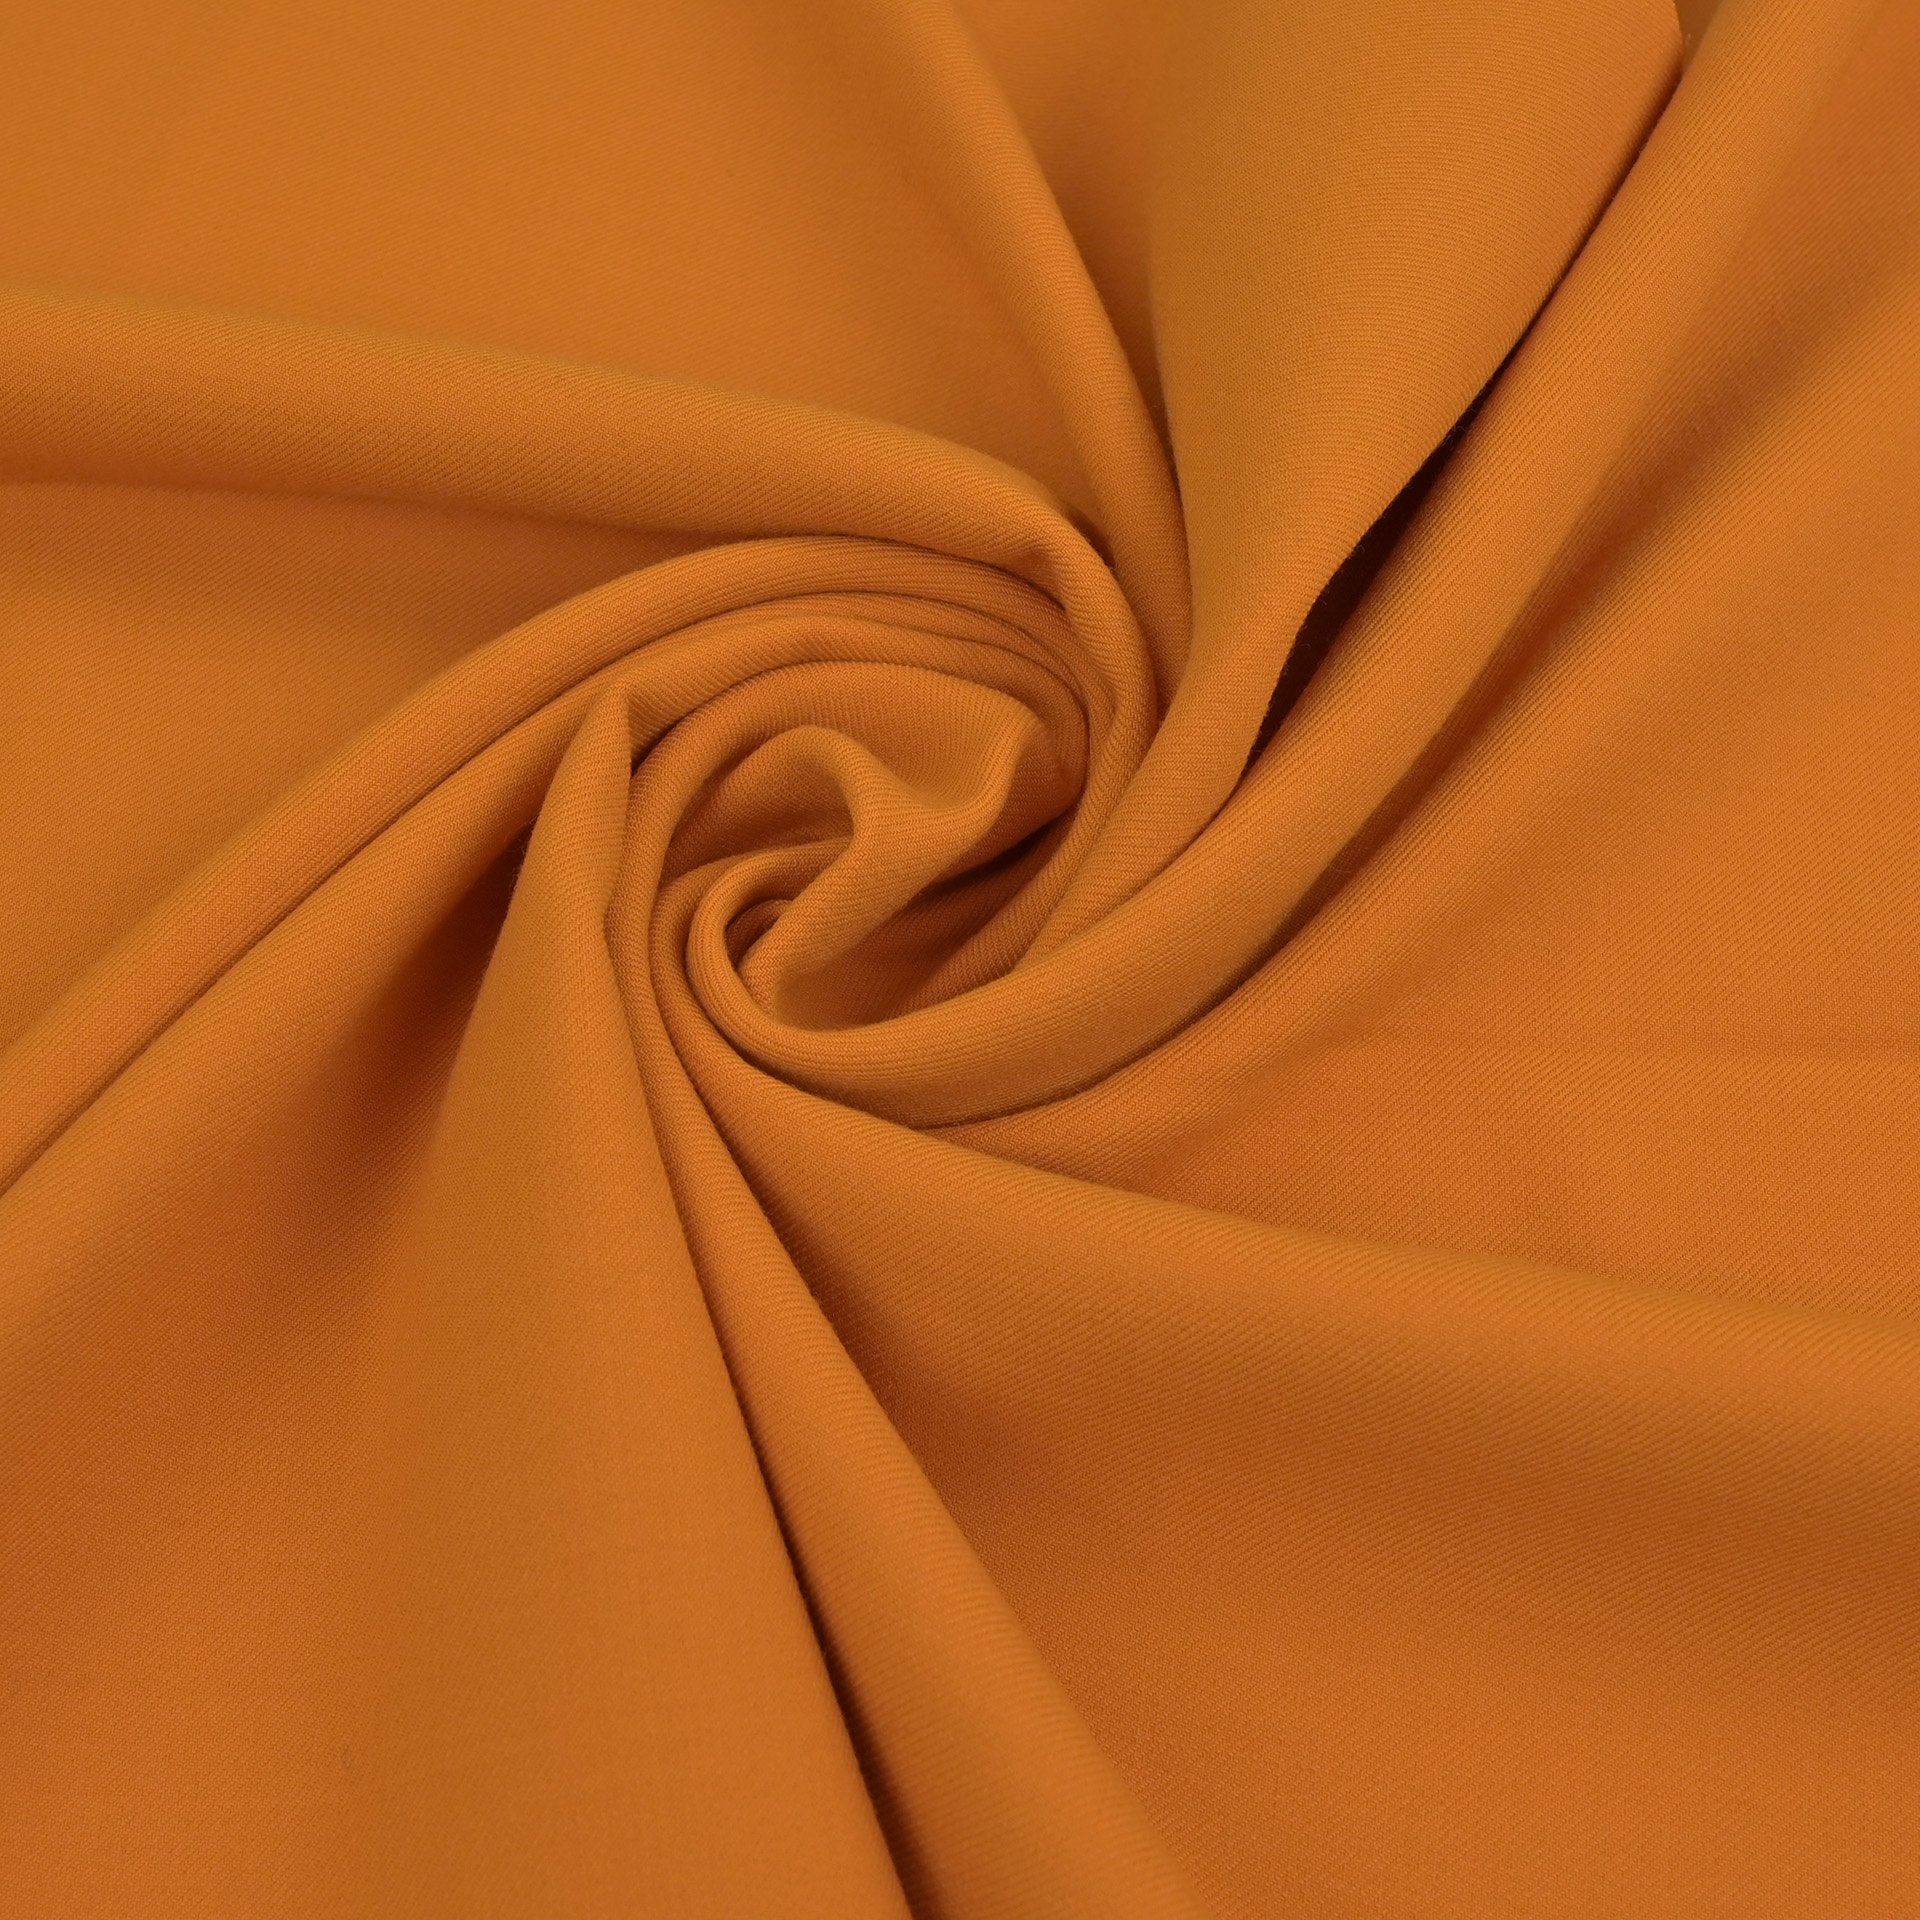 Orange Coating Fabric 3067